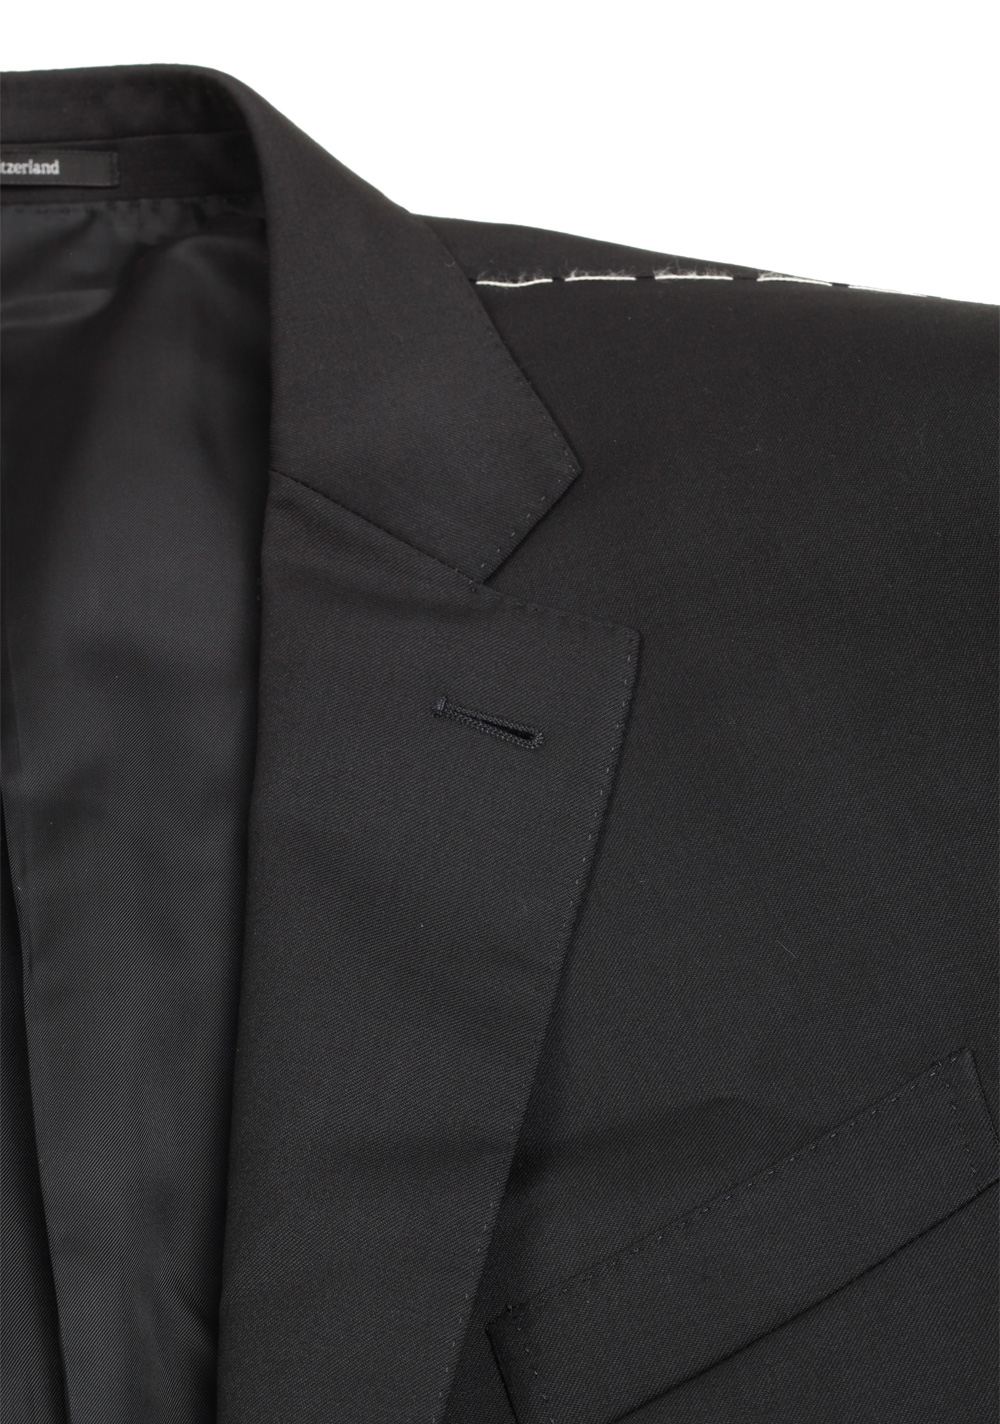 ZEGNA Milano Solid Black Multiseason Suit | Costume Limité